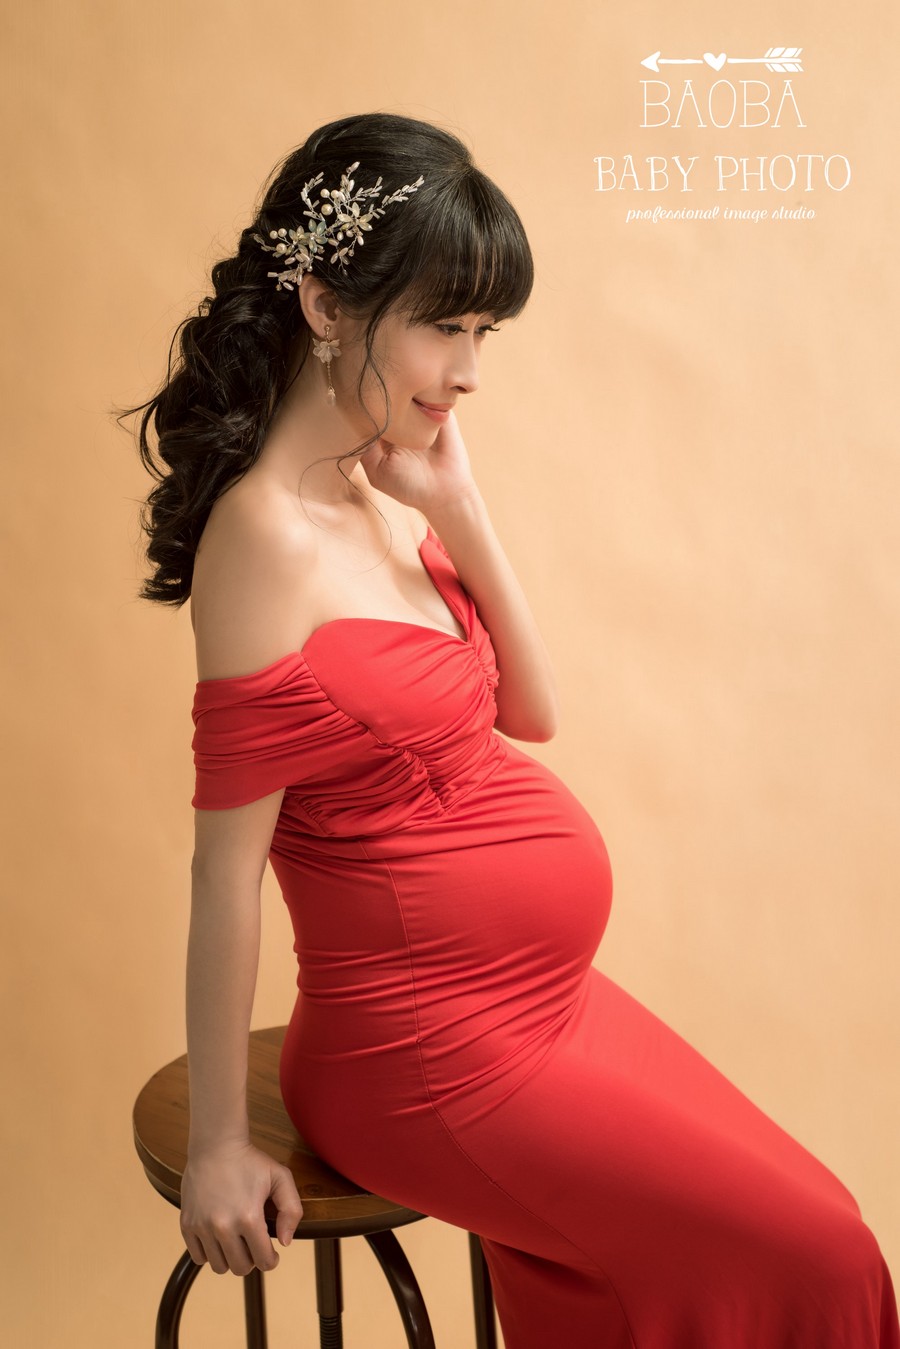 孕婦寫真,孕婦照,拍孕婦照,孕婦攝影,孕婦裝,孕婦禮服